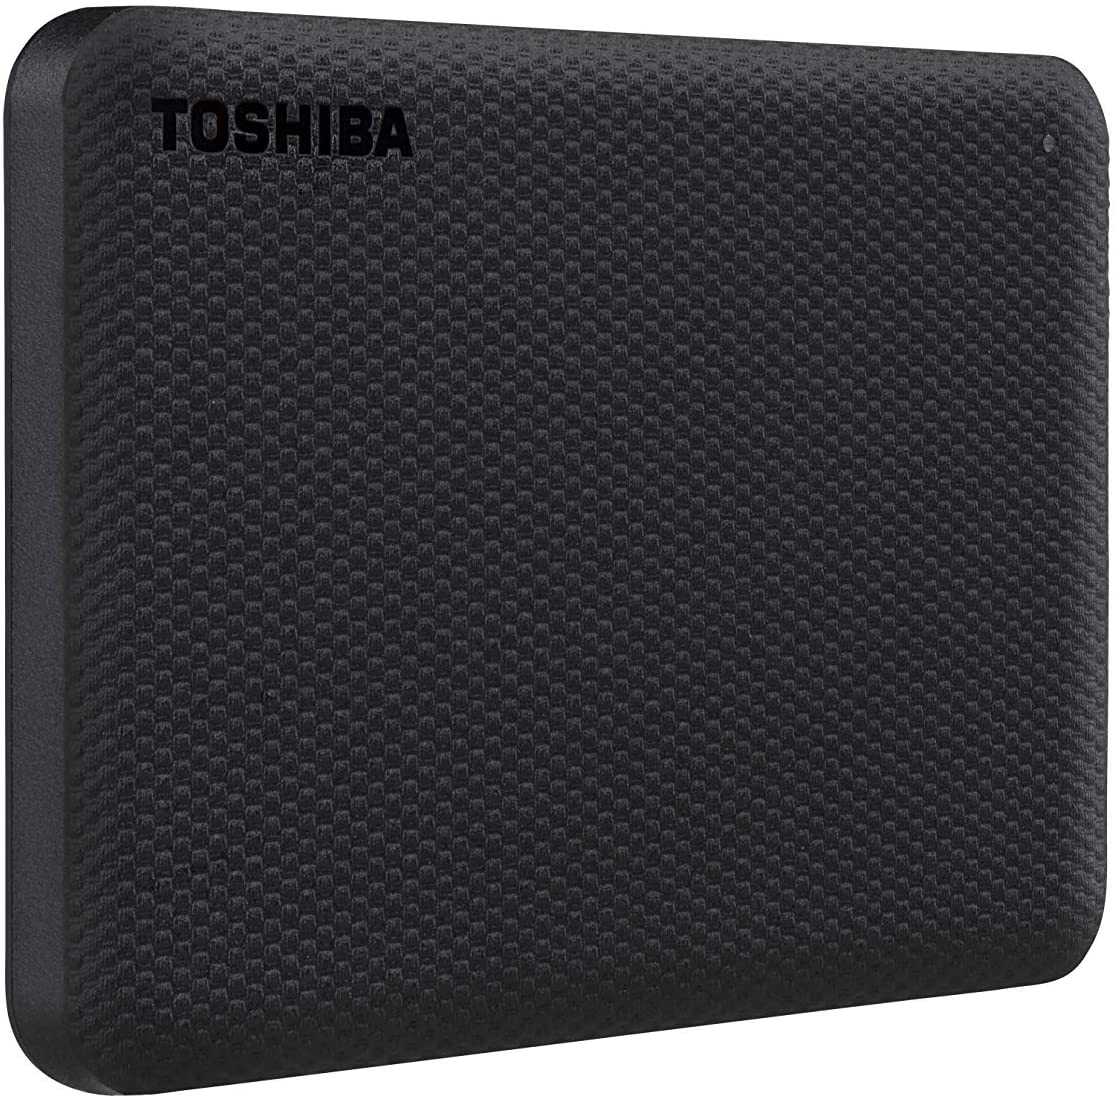 Disco Duro Externo Toshiba 2Tb Hdtca20Xk3Aa Advance V10 Negro